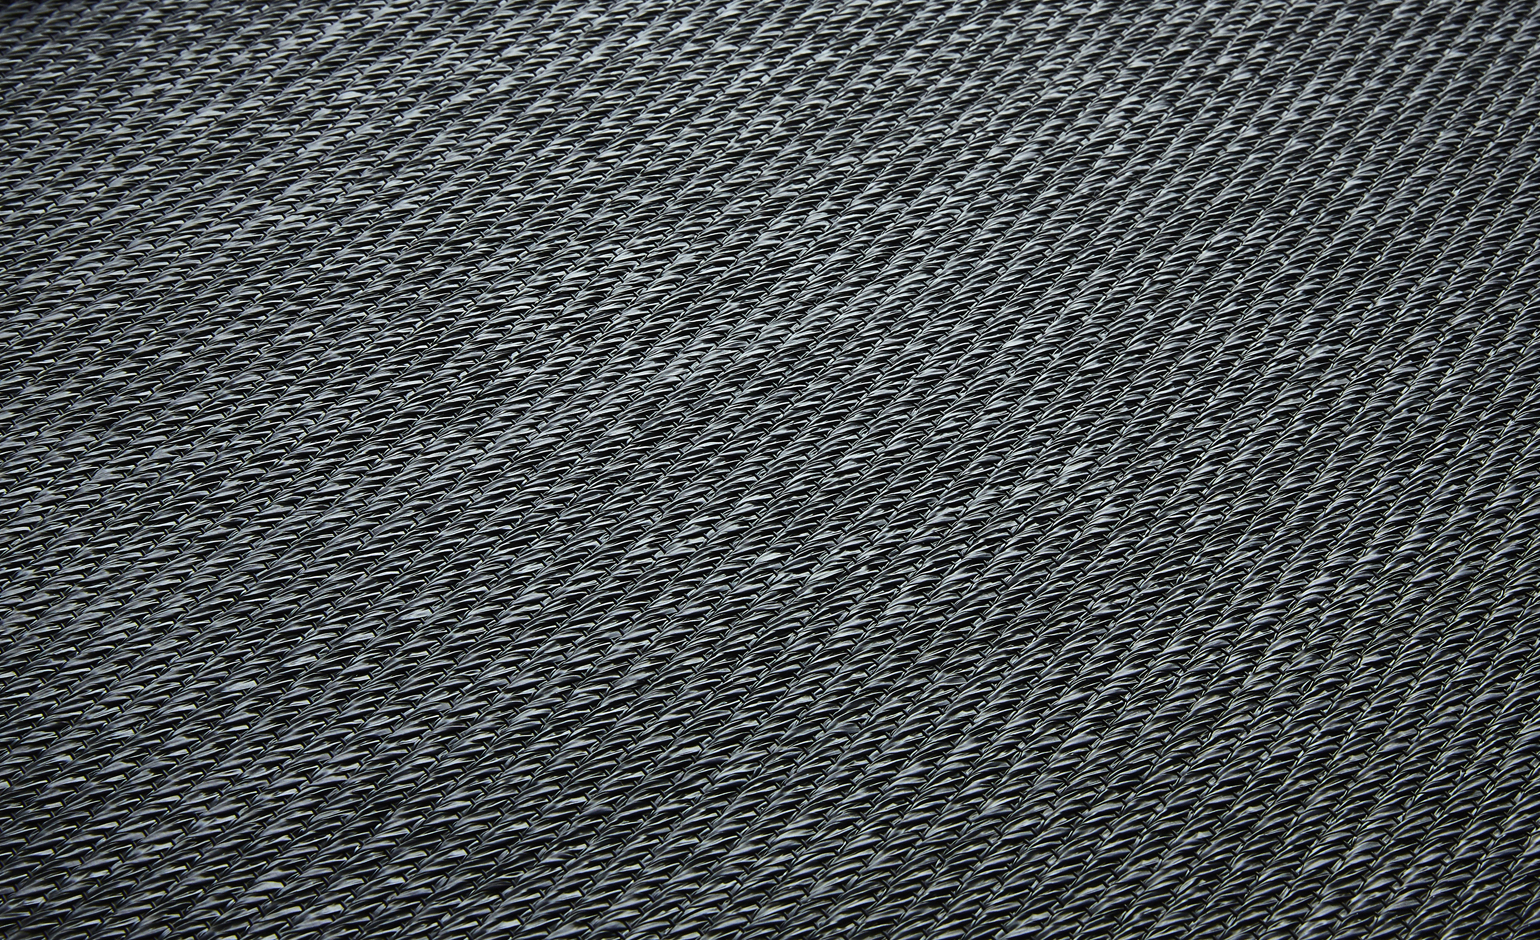 Sol vinyle rouleau NATURELOOK , Textile fibre tissée, anthracite, rouleau 2.00 m